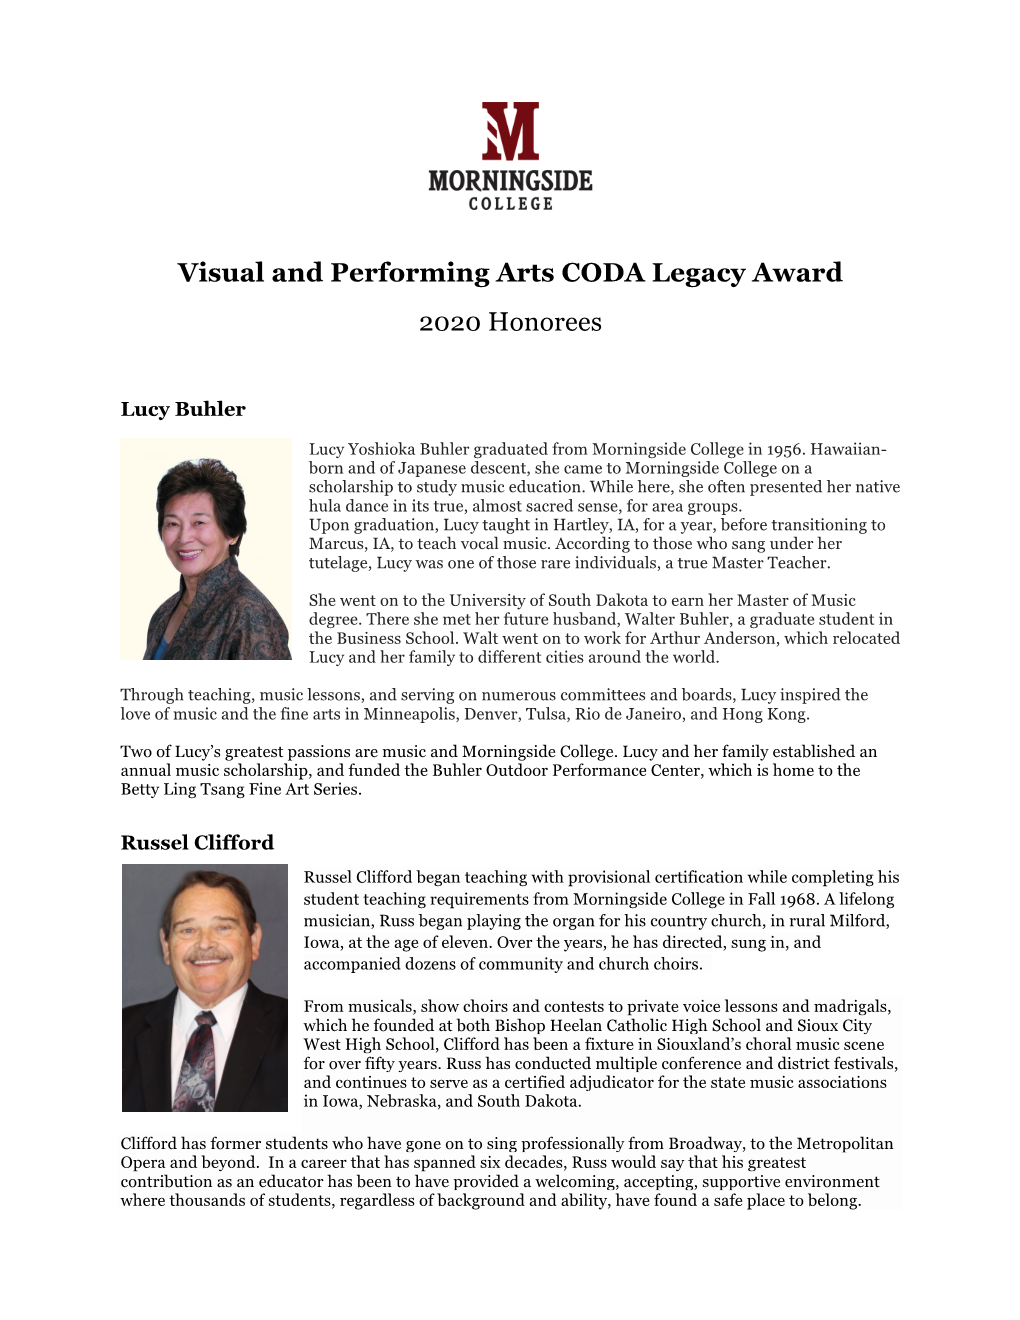 Visual and Performing Arts CODA Legacy Award 2020 Honorees